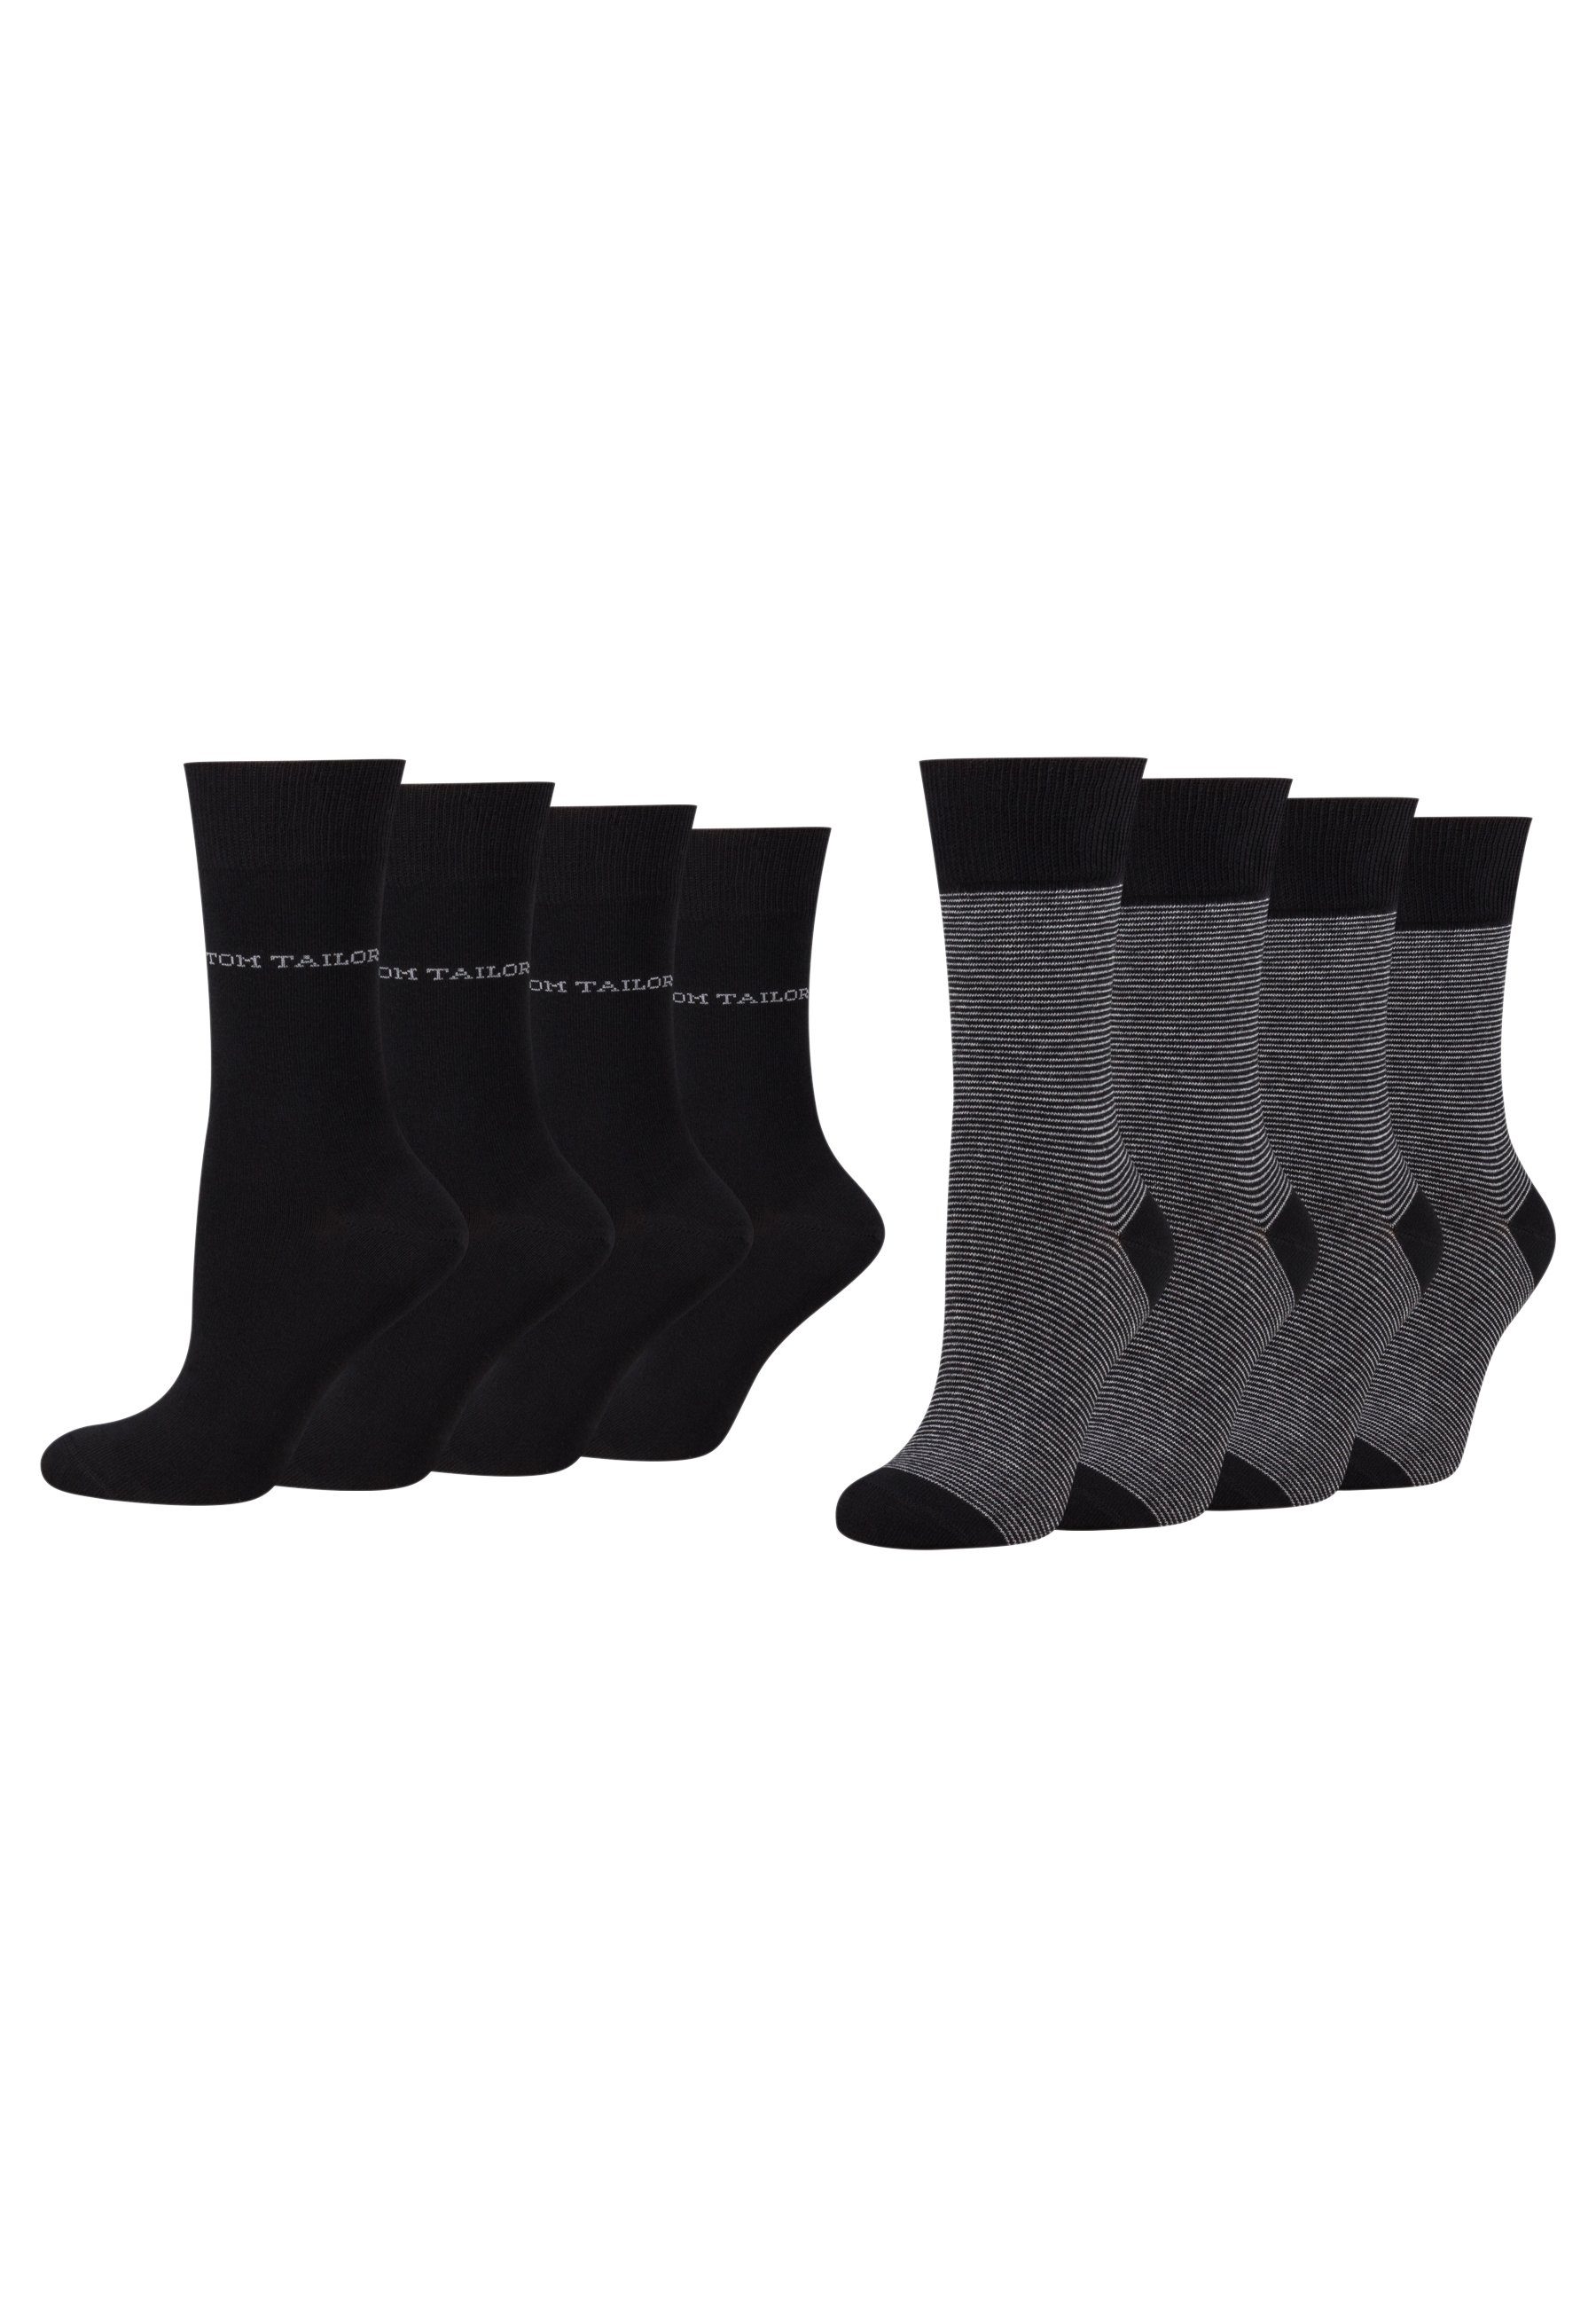 TOM TAILOR Socken 9521610042_8 Tom women stripe basic socks Tailor 2er Paar 8 black